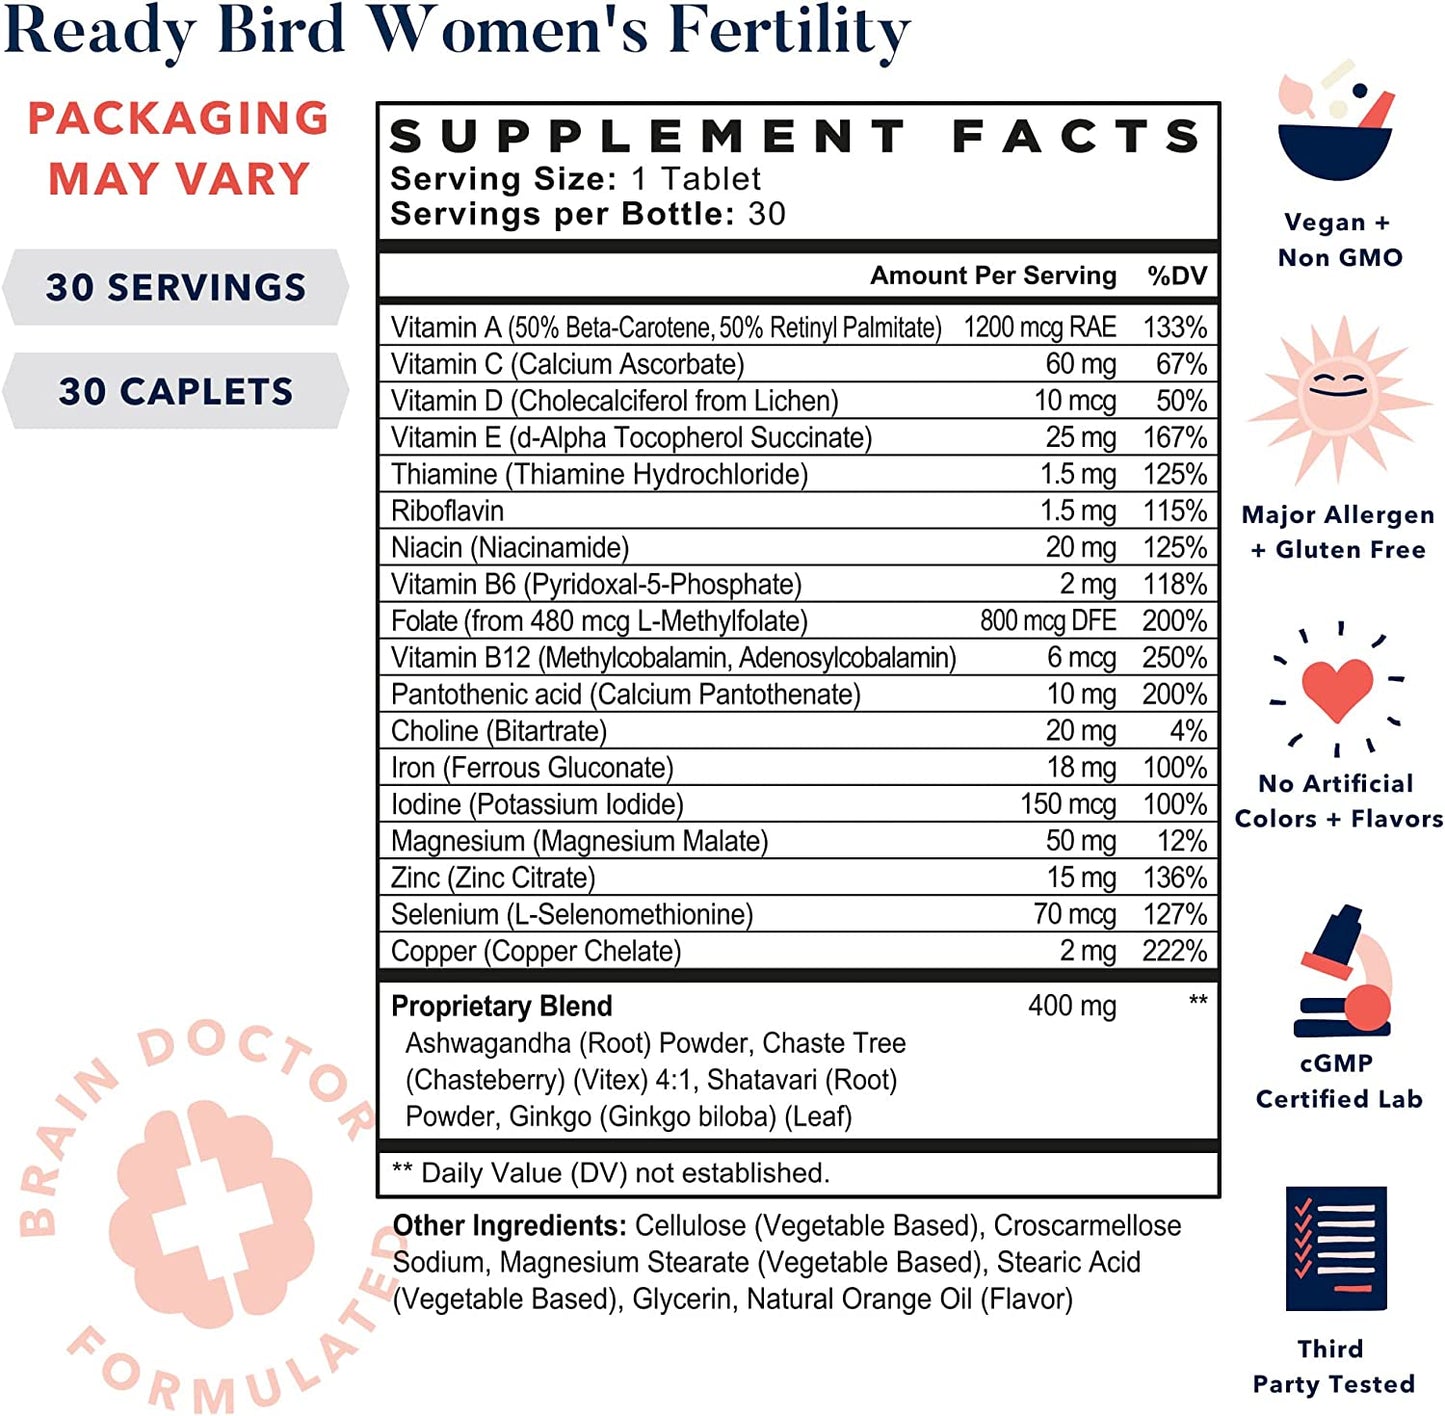 Fórmula de fertilidad Best Nest para mujeres, recomendado por médicos, metilfolato, alimentos enteros, antioxidantes, mezcla de fertilidad a base de hierbas y nutrición prenatal, 30 unidades